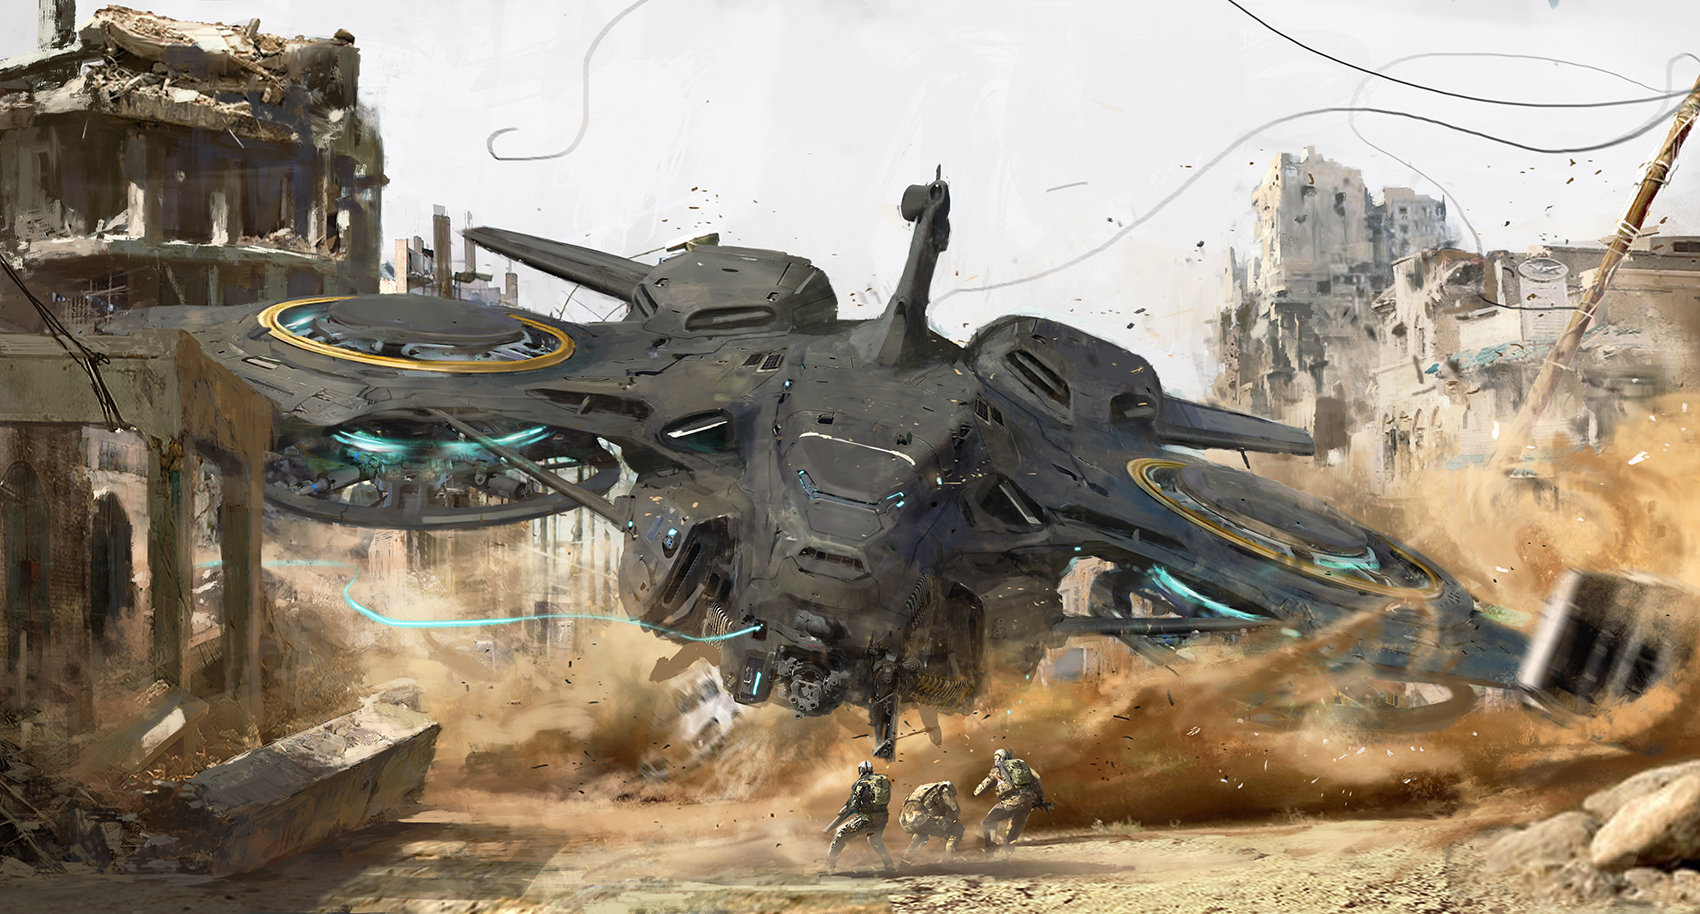 Sci Fi Vehicle Art by Hyunwook Chun